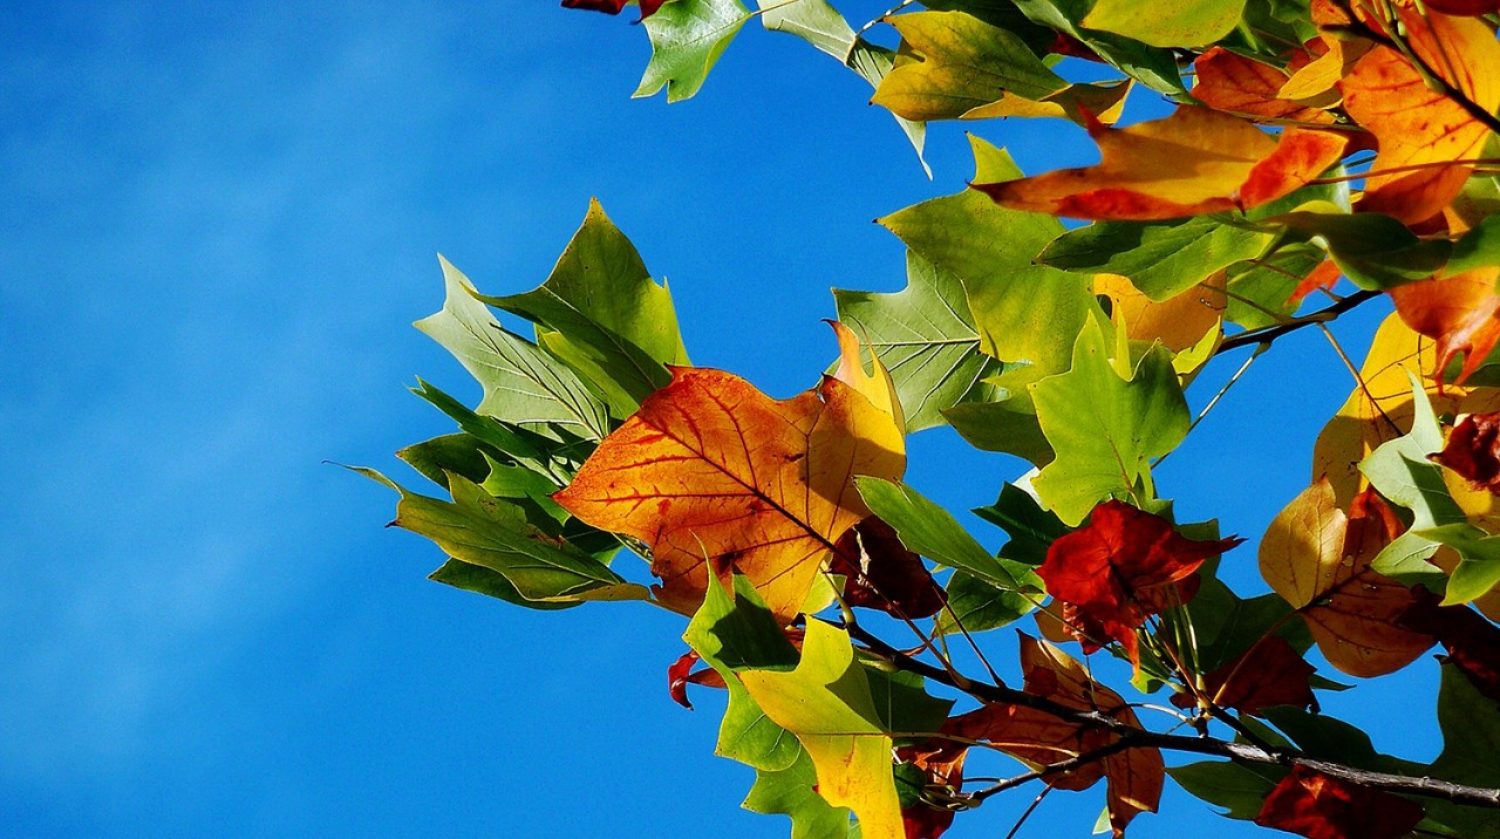 autumn leaves (moritz320 for pixabay)